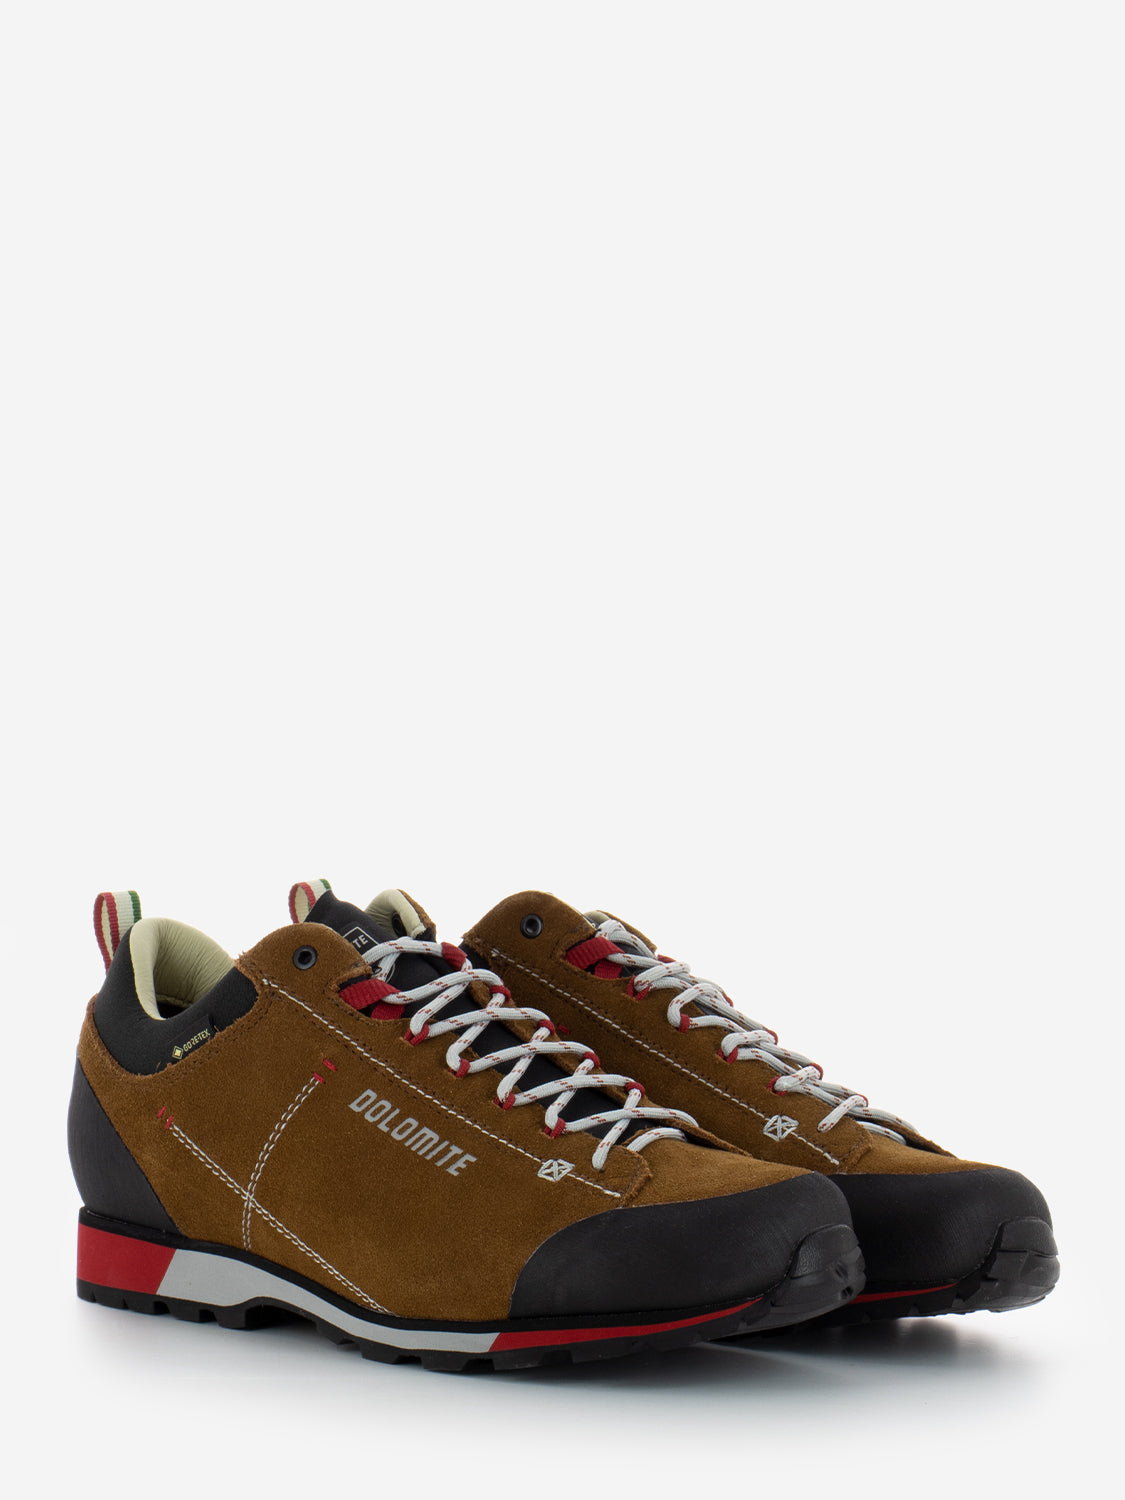 Dolomite Zapato MS 54 Hike Low EVO GTX, Hombre, Bronze Brown, 39.5